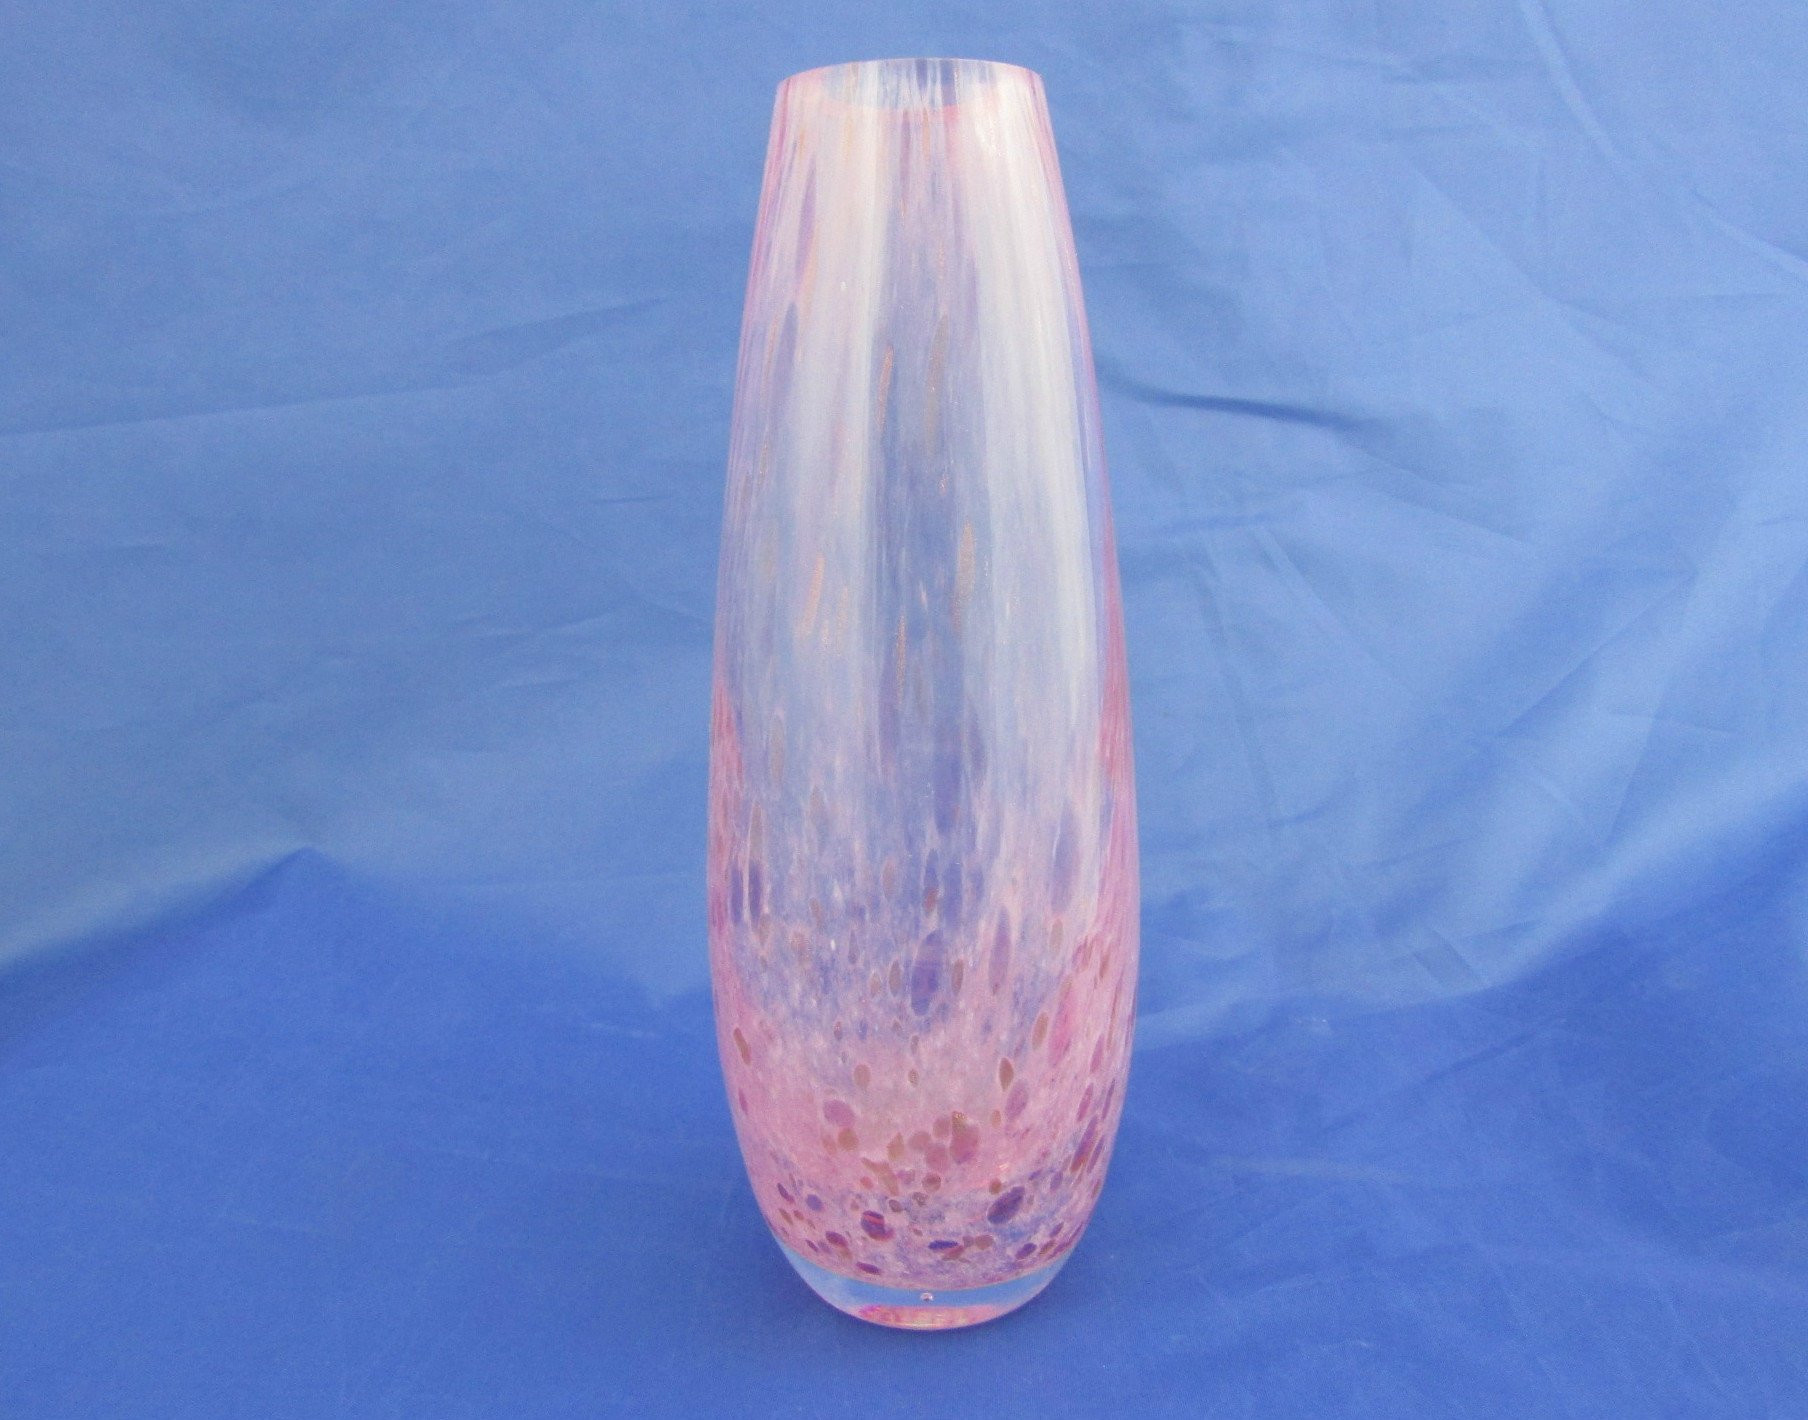 17 Elegant Crystal Flower Vases for Sale 2024 free download crystal flower vases for sale of caithness glass vase teardrop shaped vase pink spatter glass etsy regarding dc29fc294c28ezoom